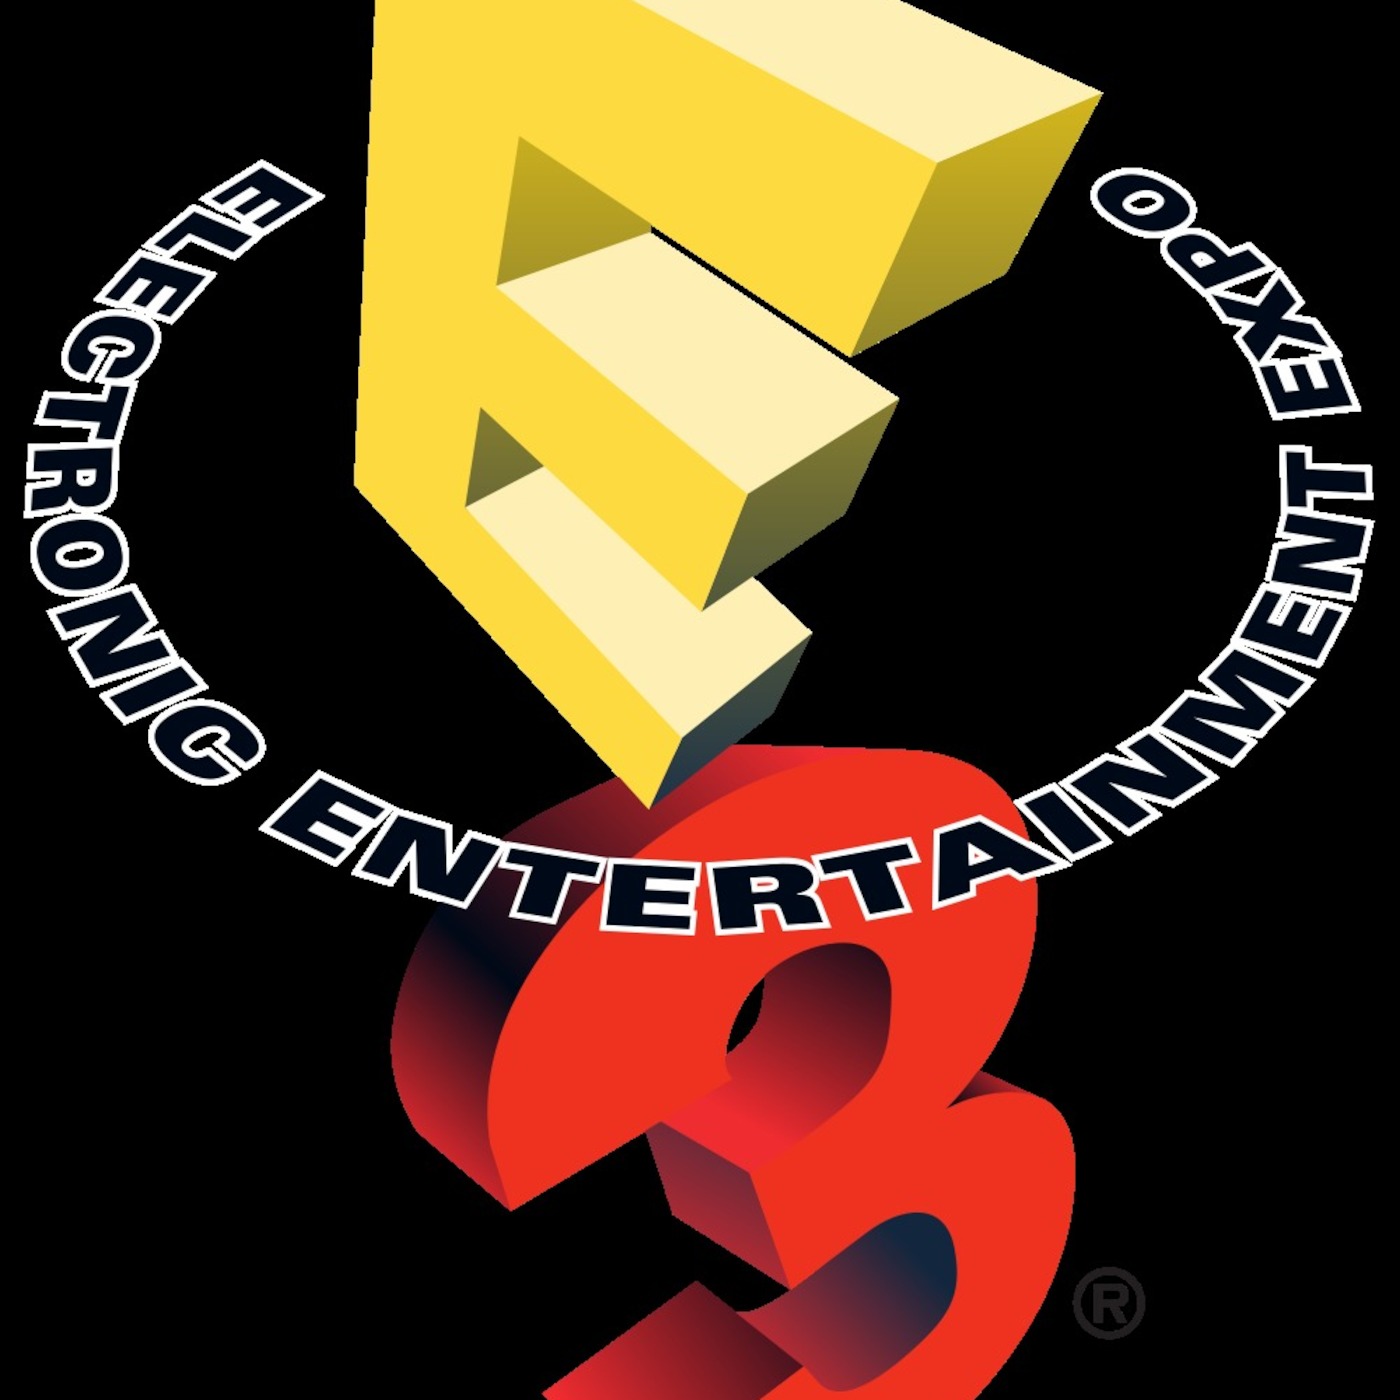 Randomly Generated Encounters - E3 Extravaganza! Predictions Special.